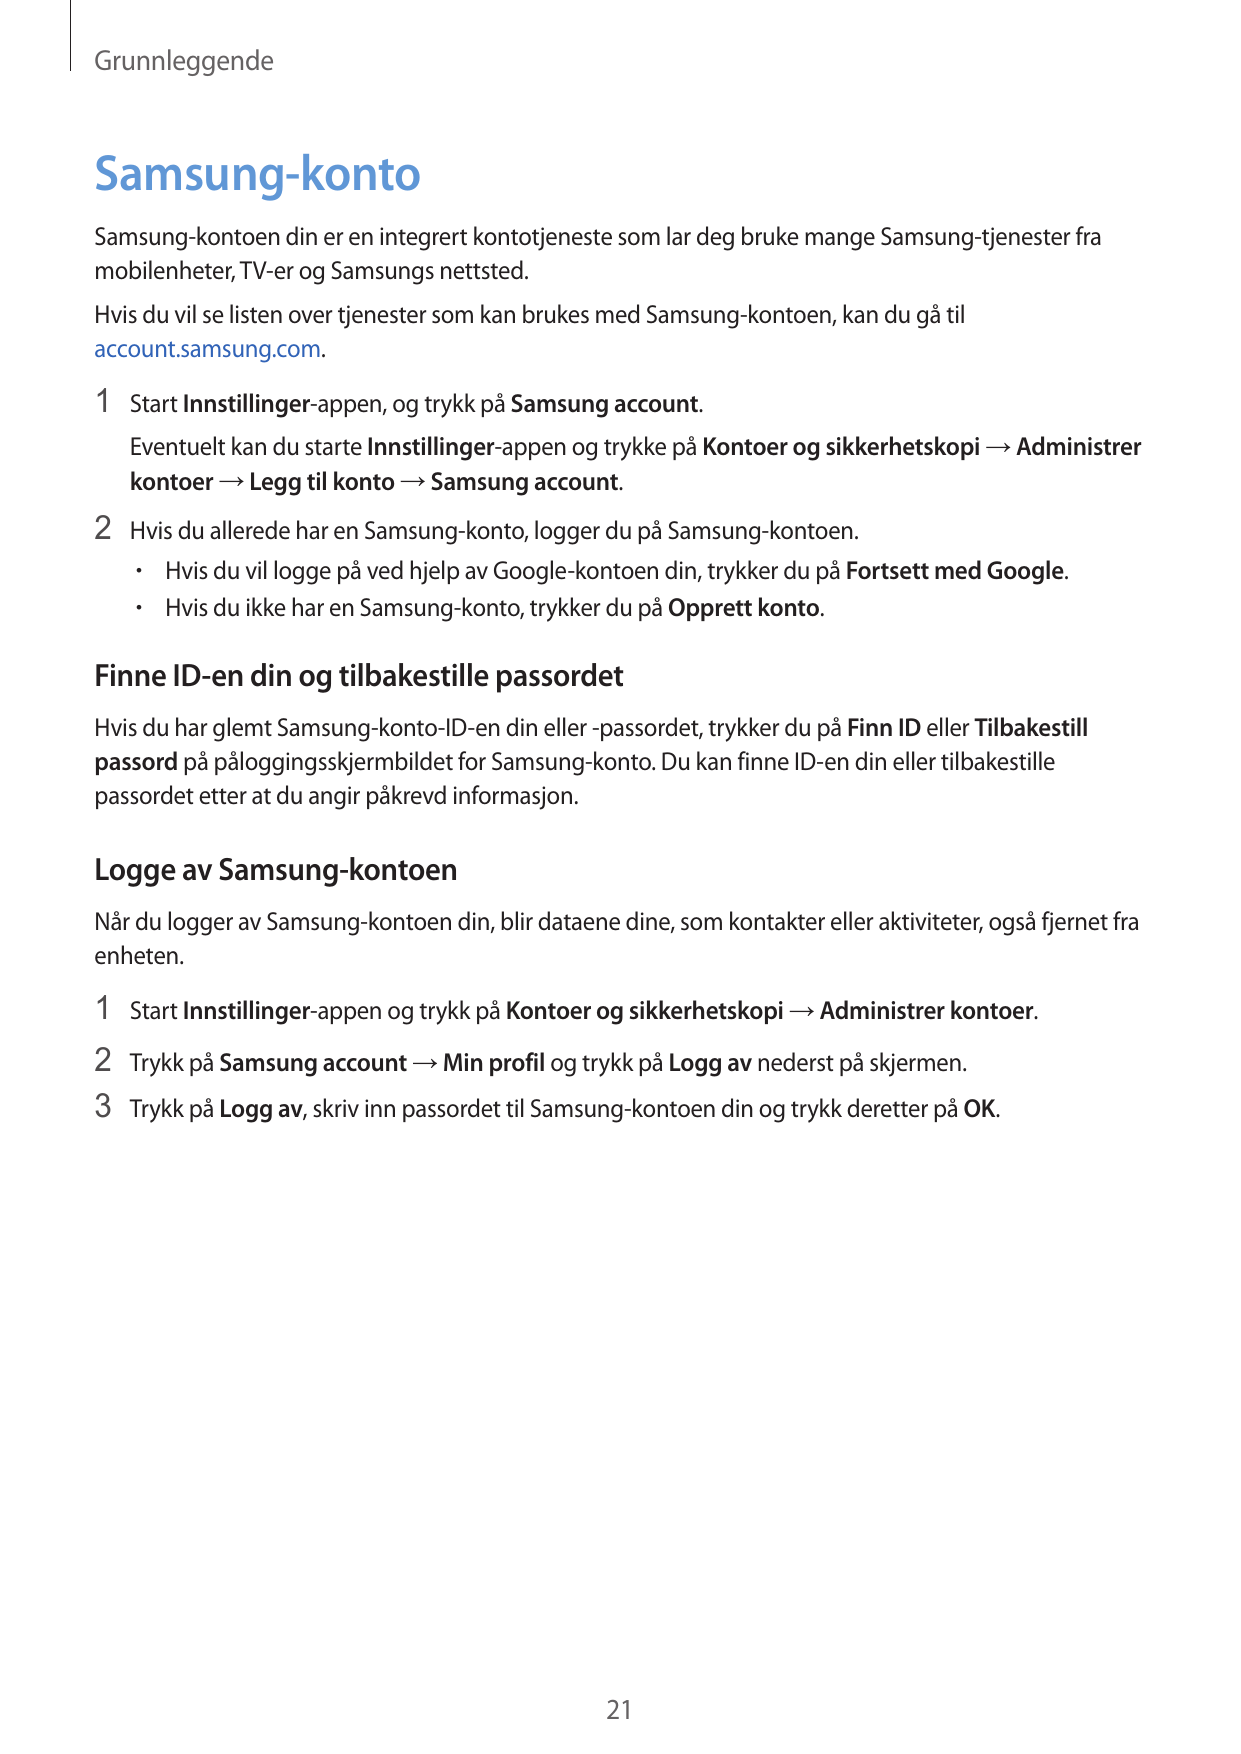 GrunnleggendeSamsung-kontoSamsung-kontoen din er en integrert kontotjeneste som lar deg bruke mange Samsung-tjenester framobilen